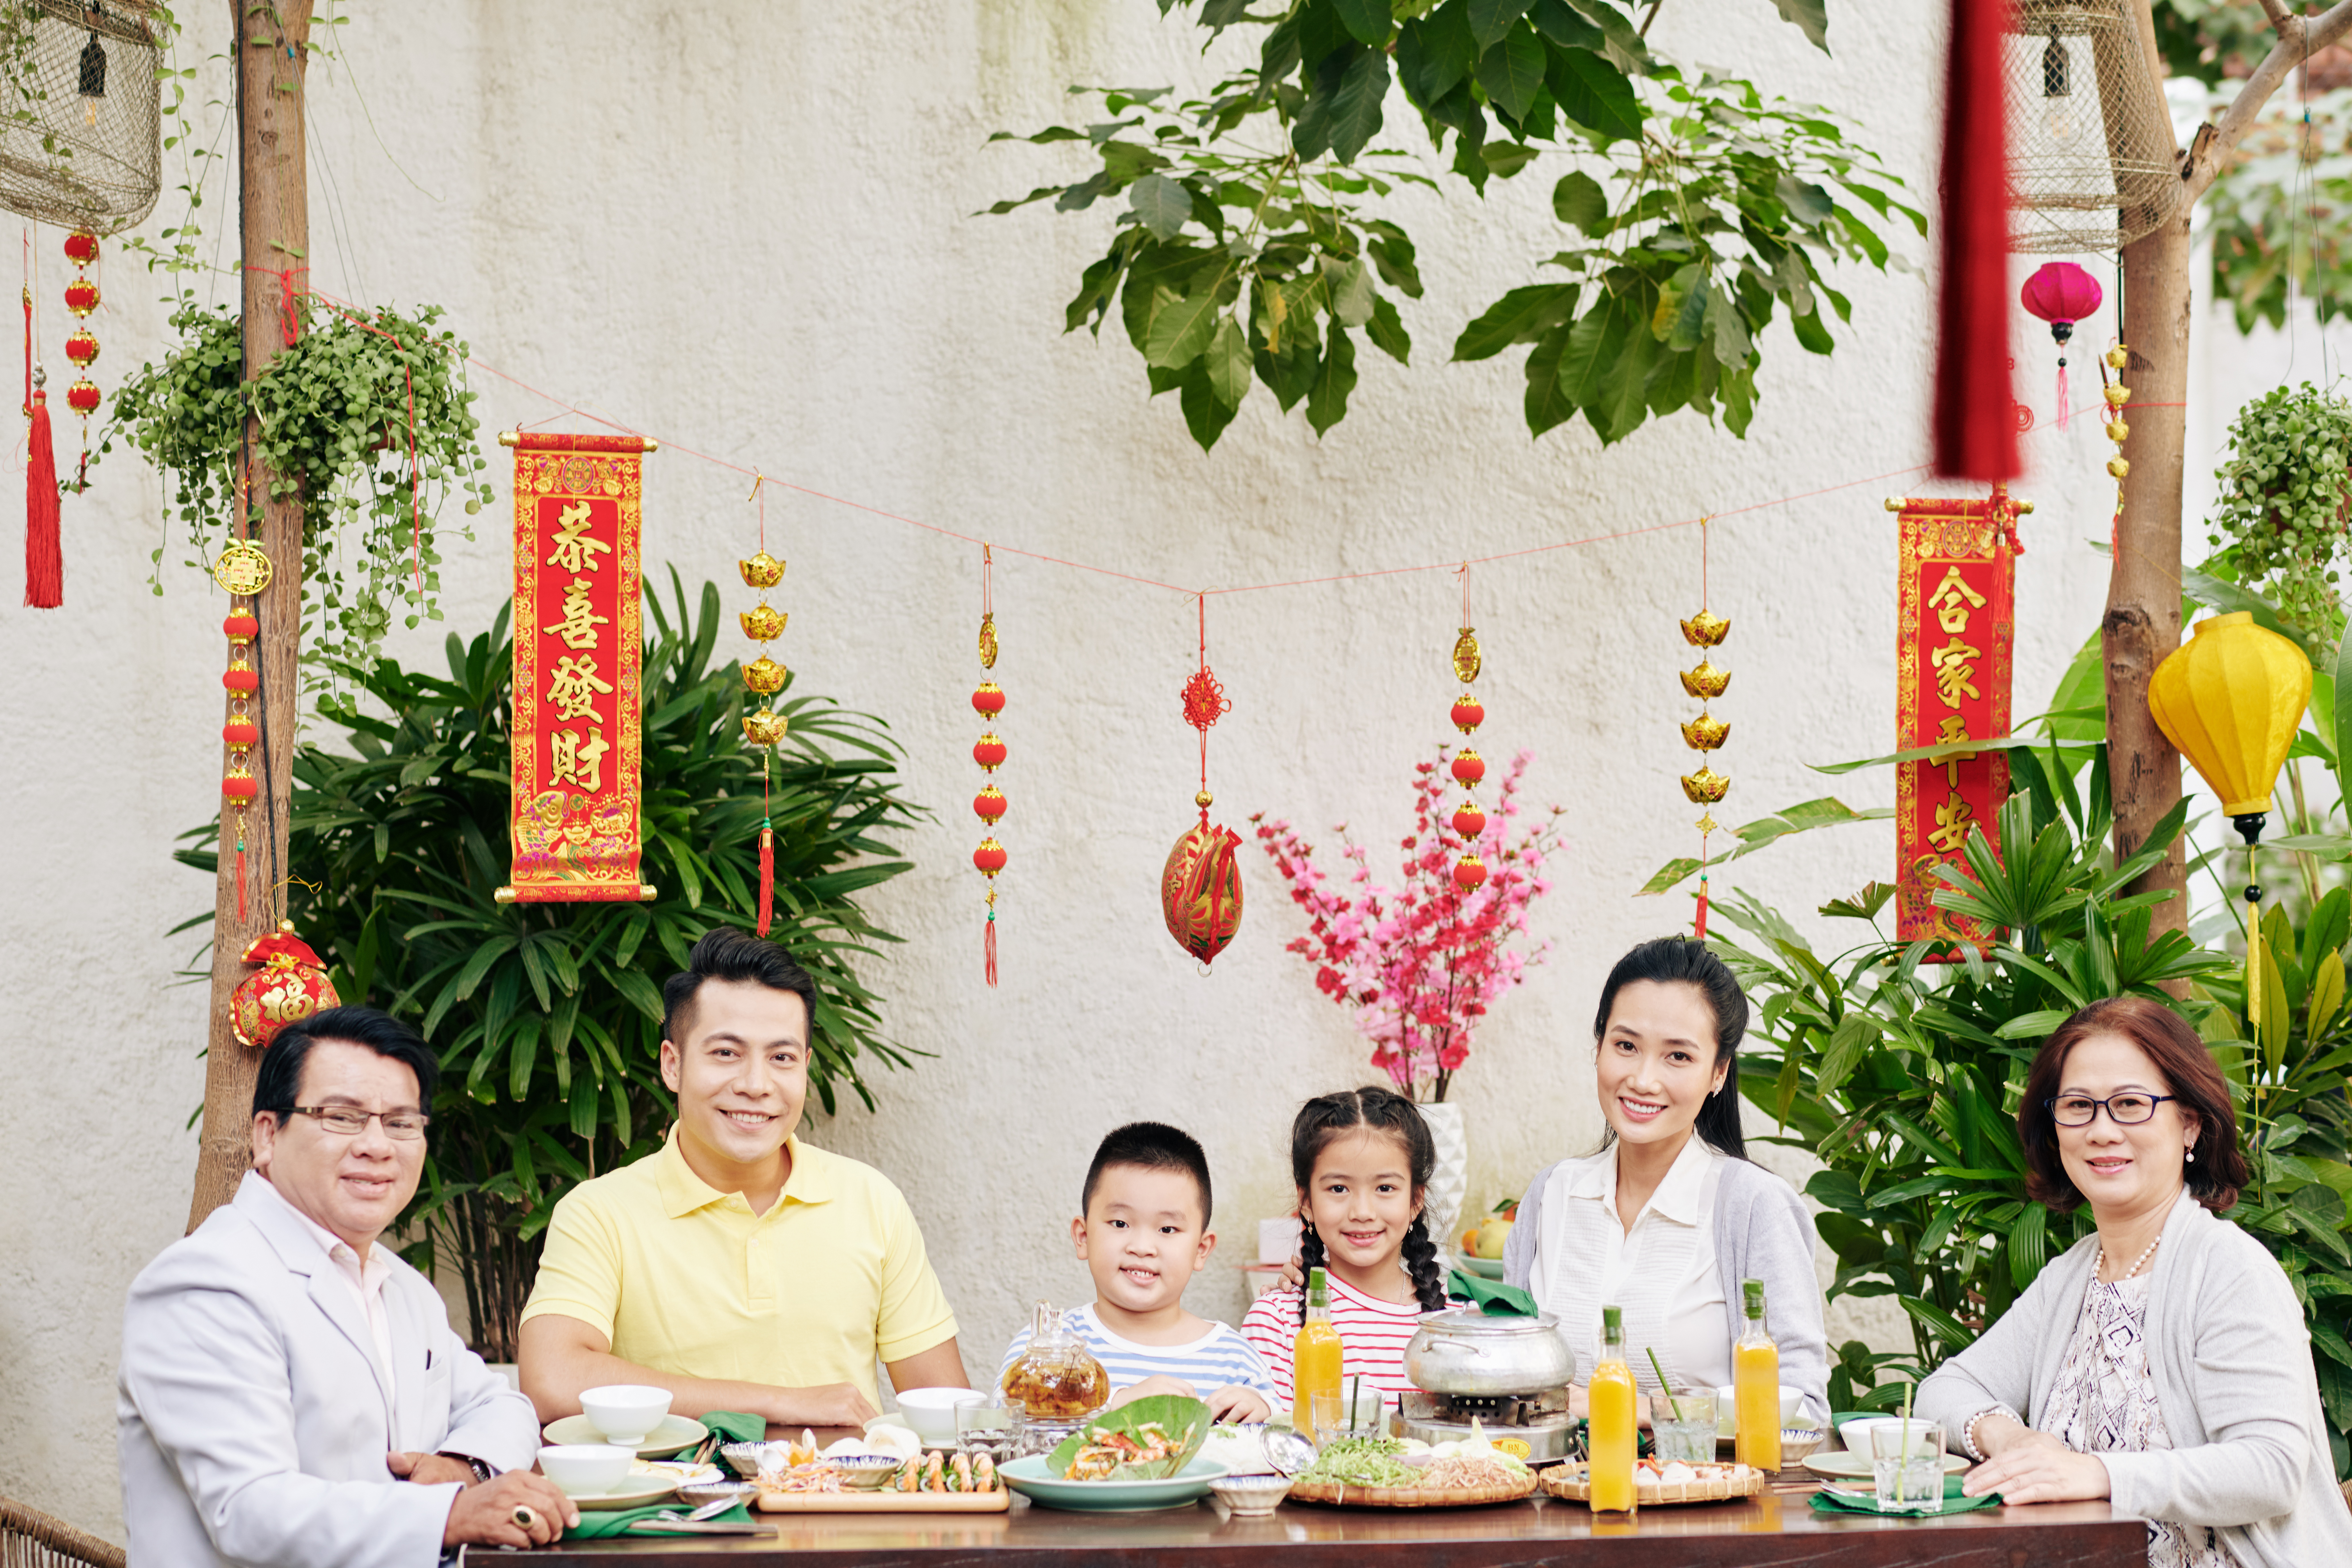 วัฒนธรรมการกินของชาวจีน